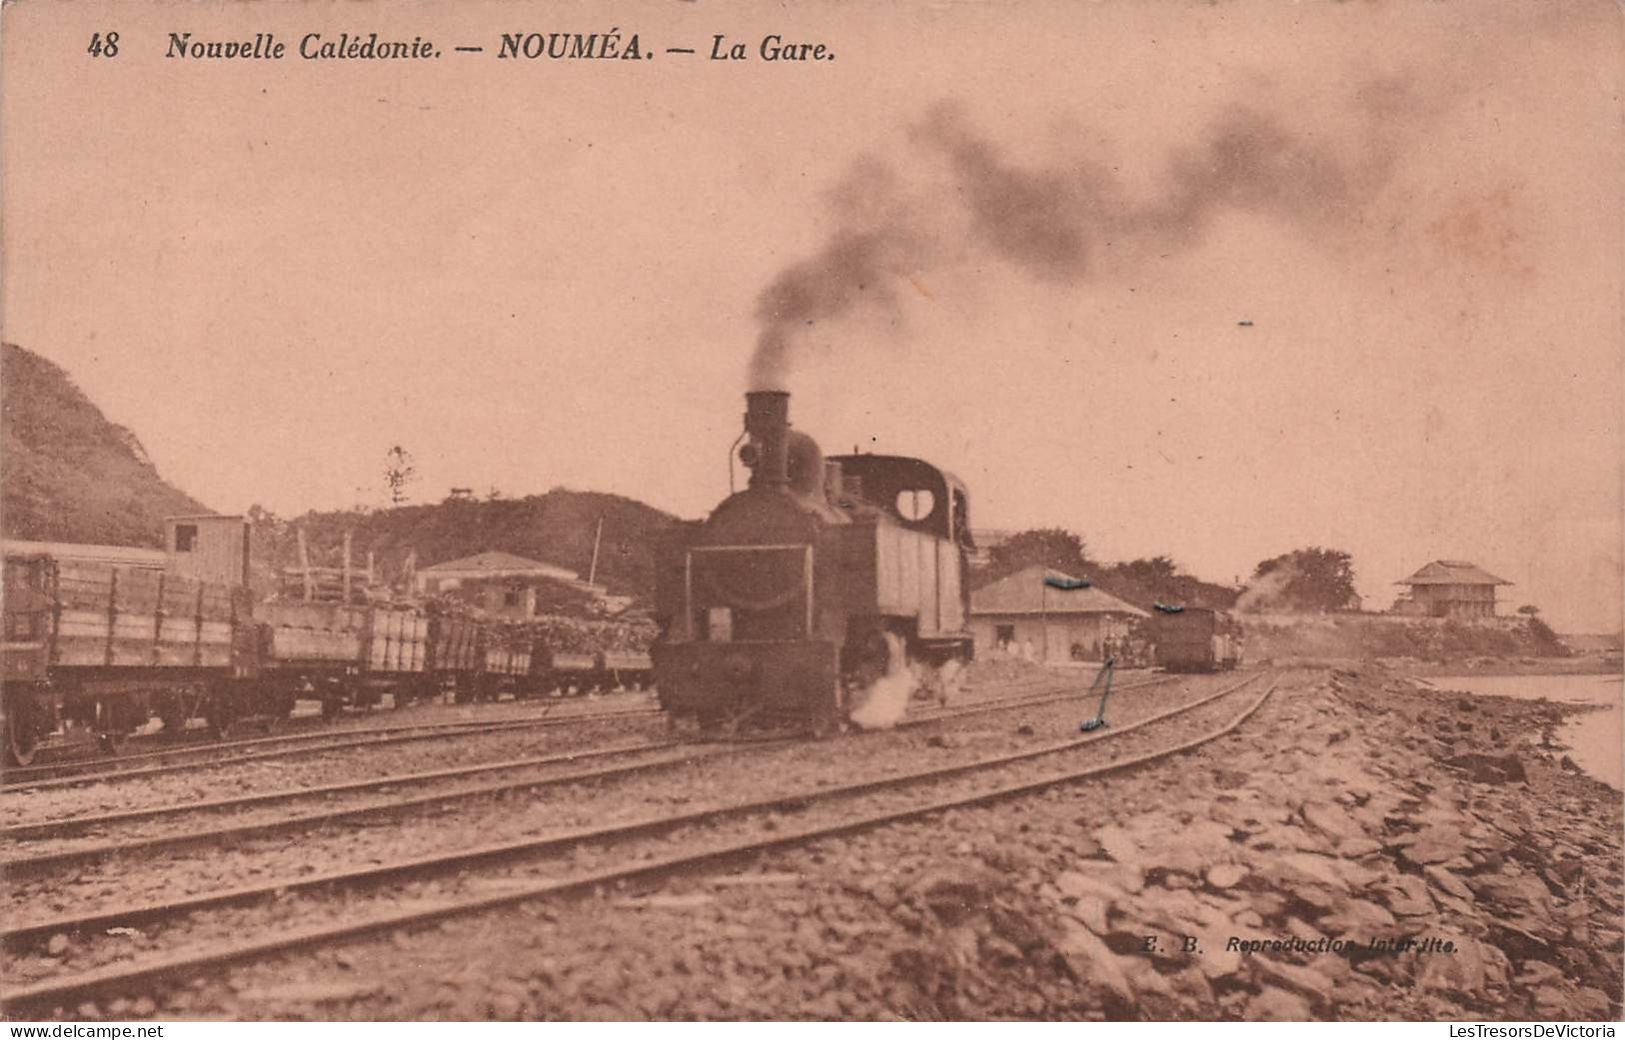 Nouvelle Calédonie - Noumea - La Gare - Train En Gare - Locomotive - Chemin De Fer - Carte Postale Ancienne - Nouvelle-Calédonie